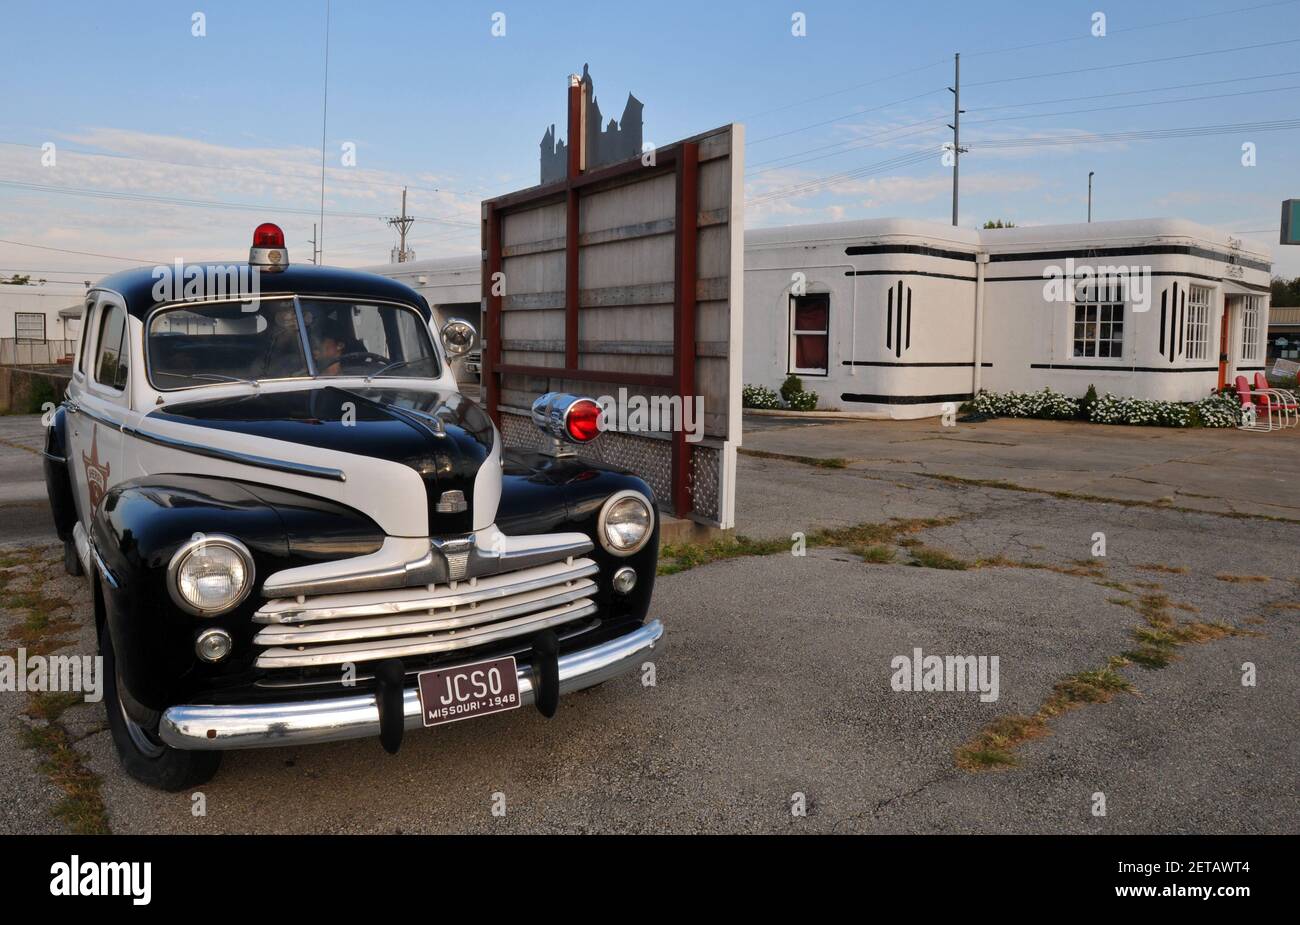 Une voiture de police classique est exposée près du Boots court Motel, un point de repère de la route 66 dans la ville de Carthage, Missouri. Banque D'Images